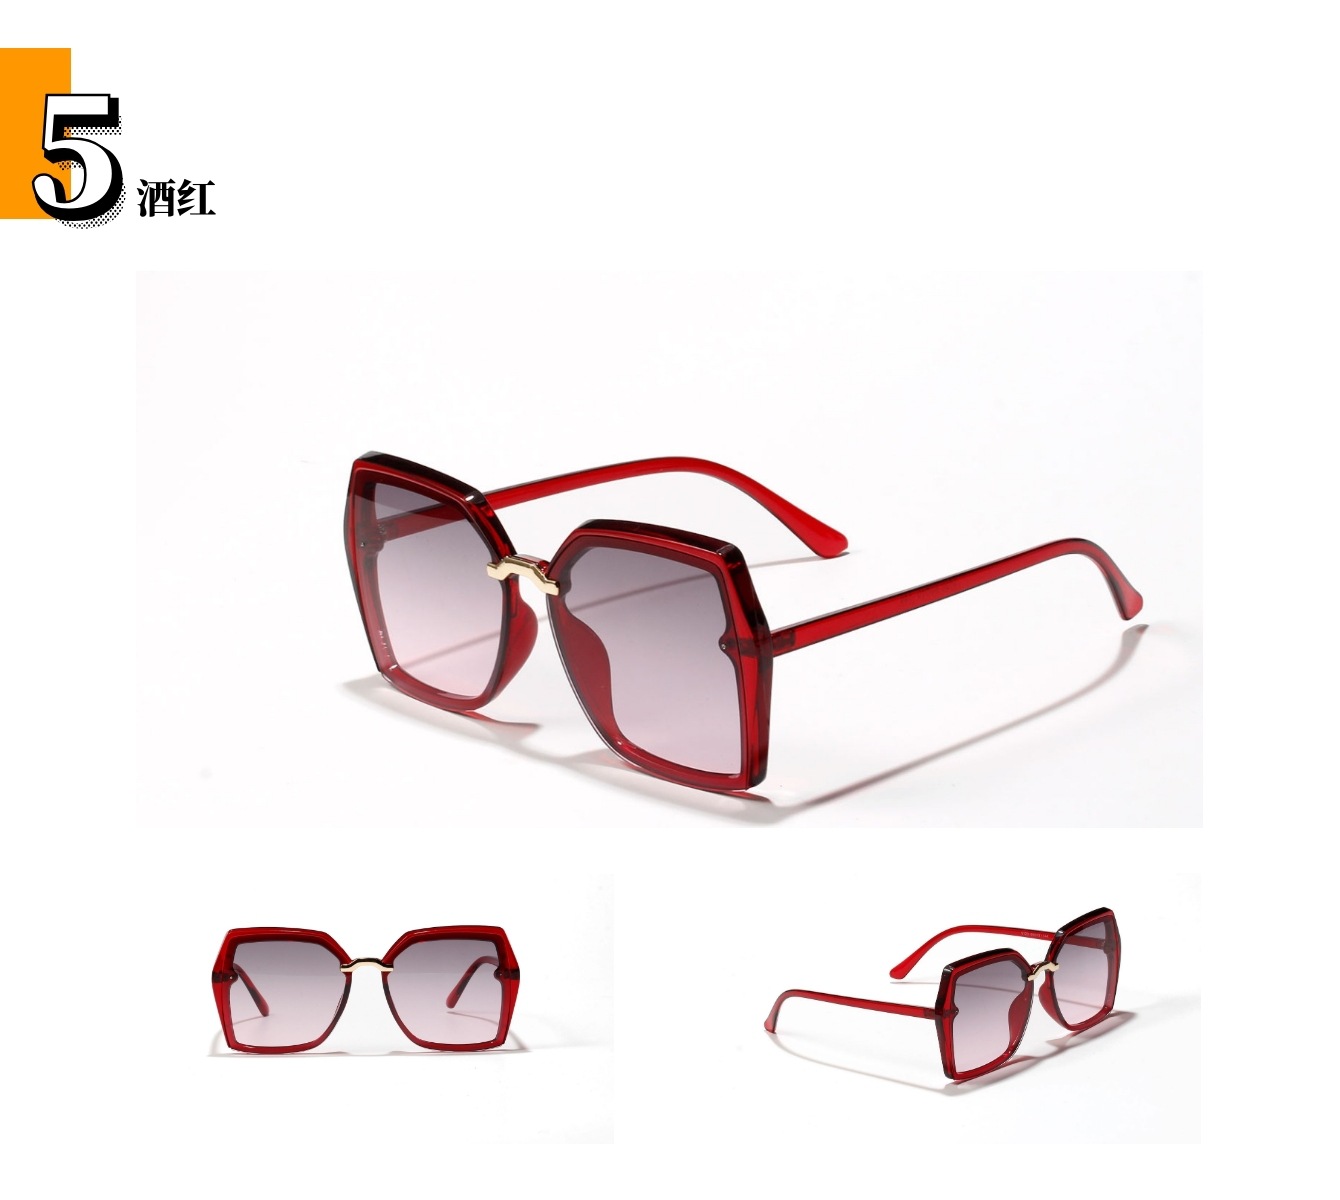 الكورية جديد أزياء مربع كبير إطار نظارات الرجعية النظارات الشمسية فوق البنفسجية حماية نظارات display picture 7